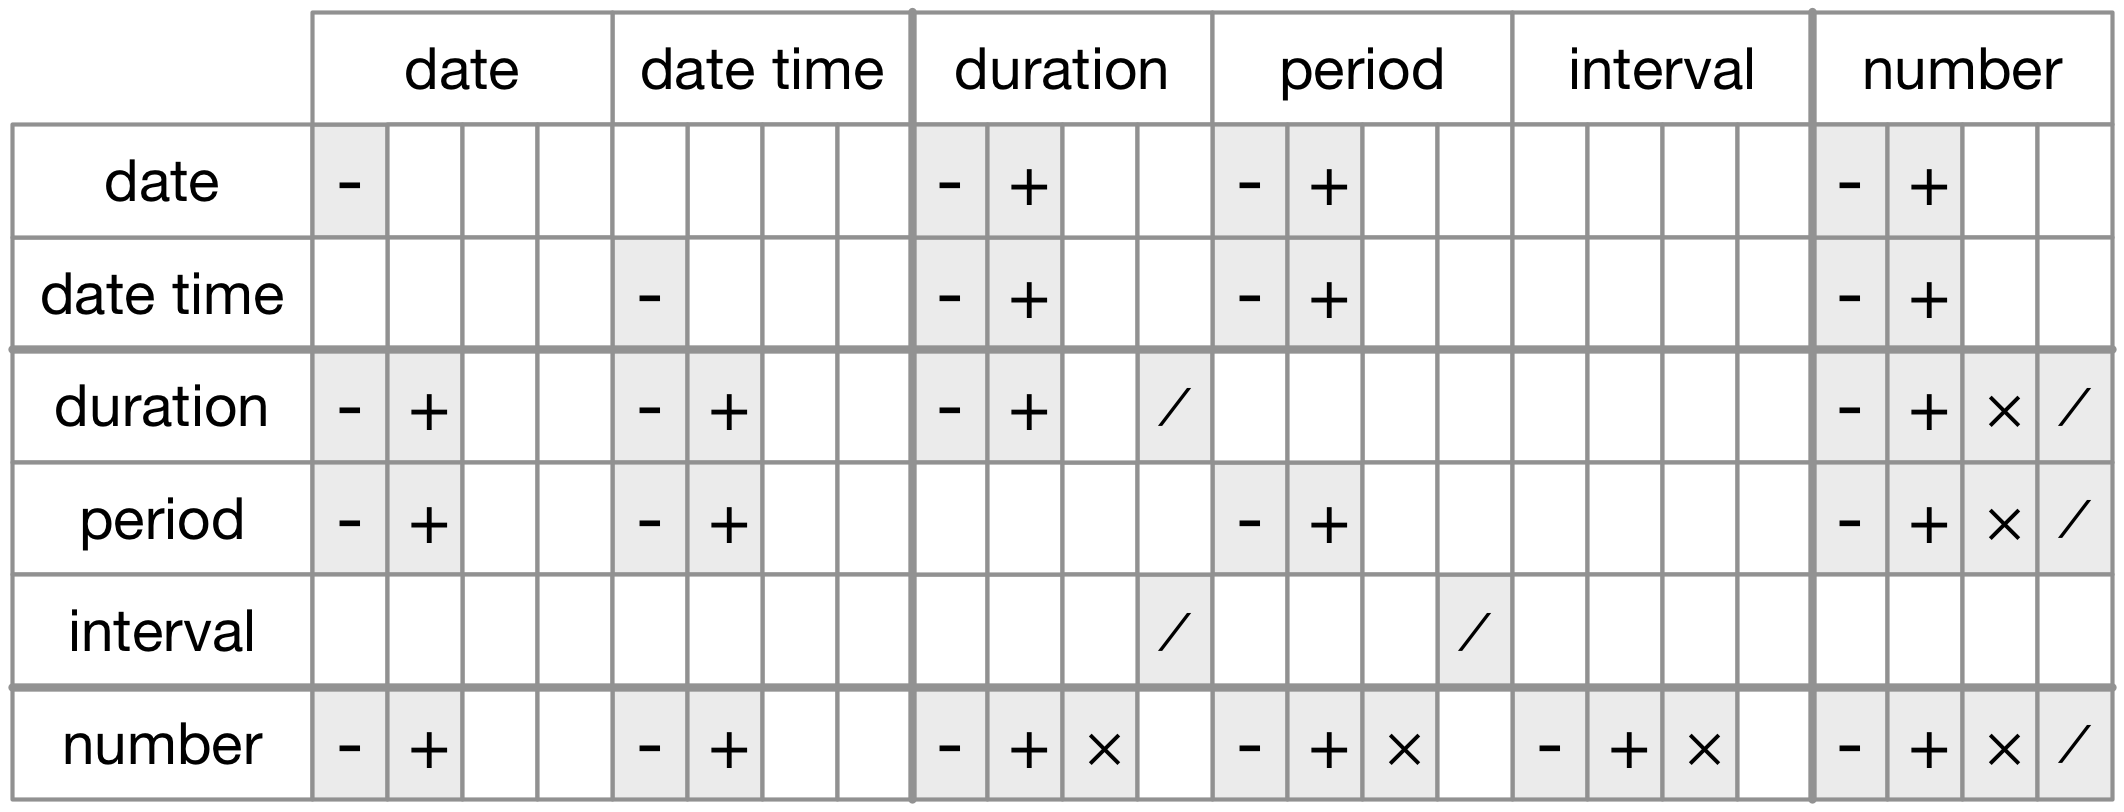 Tarih/saat sınıflarındaki veri tipleri arasında izin verilen aritmetik işlemler.